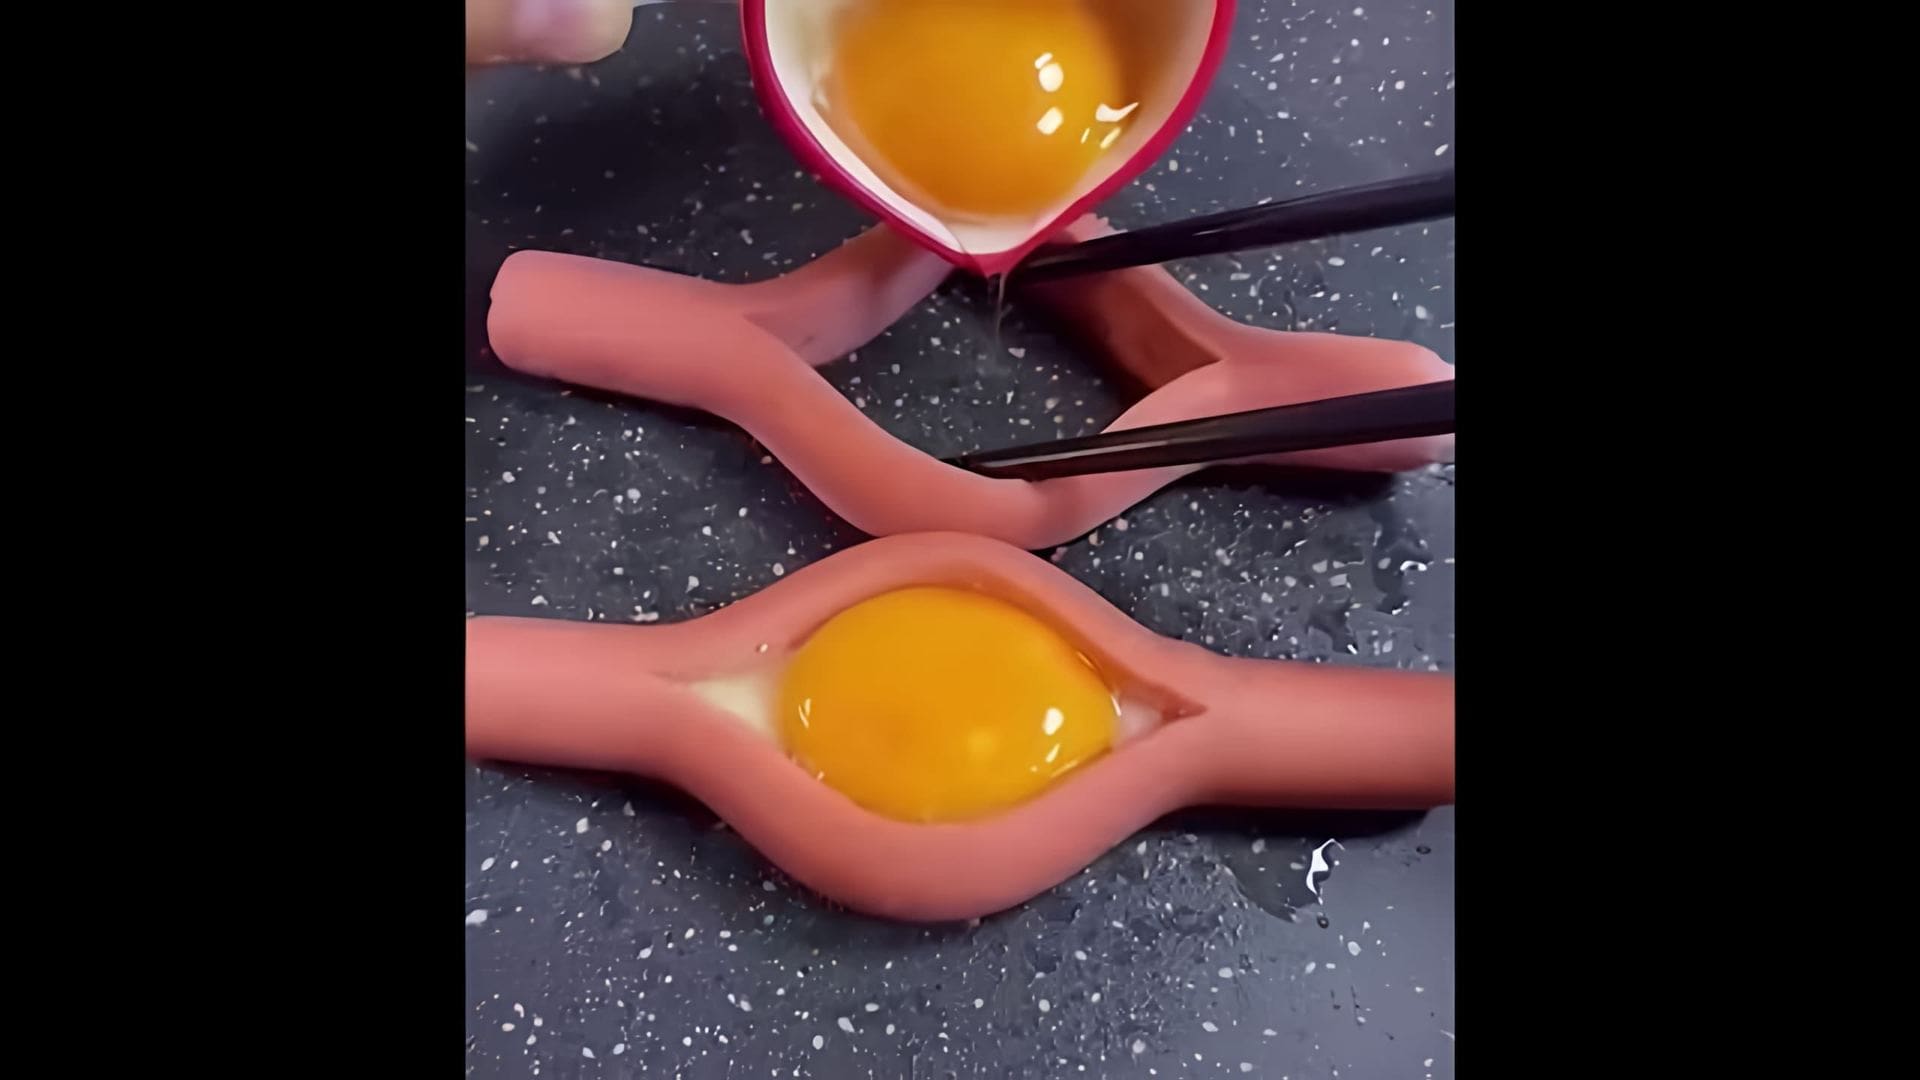 В этом видео-ролике демонстрируется процесс приготовления вкусной и оригинальной закуски - яичницы внутри сосиски